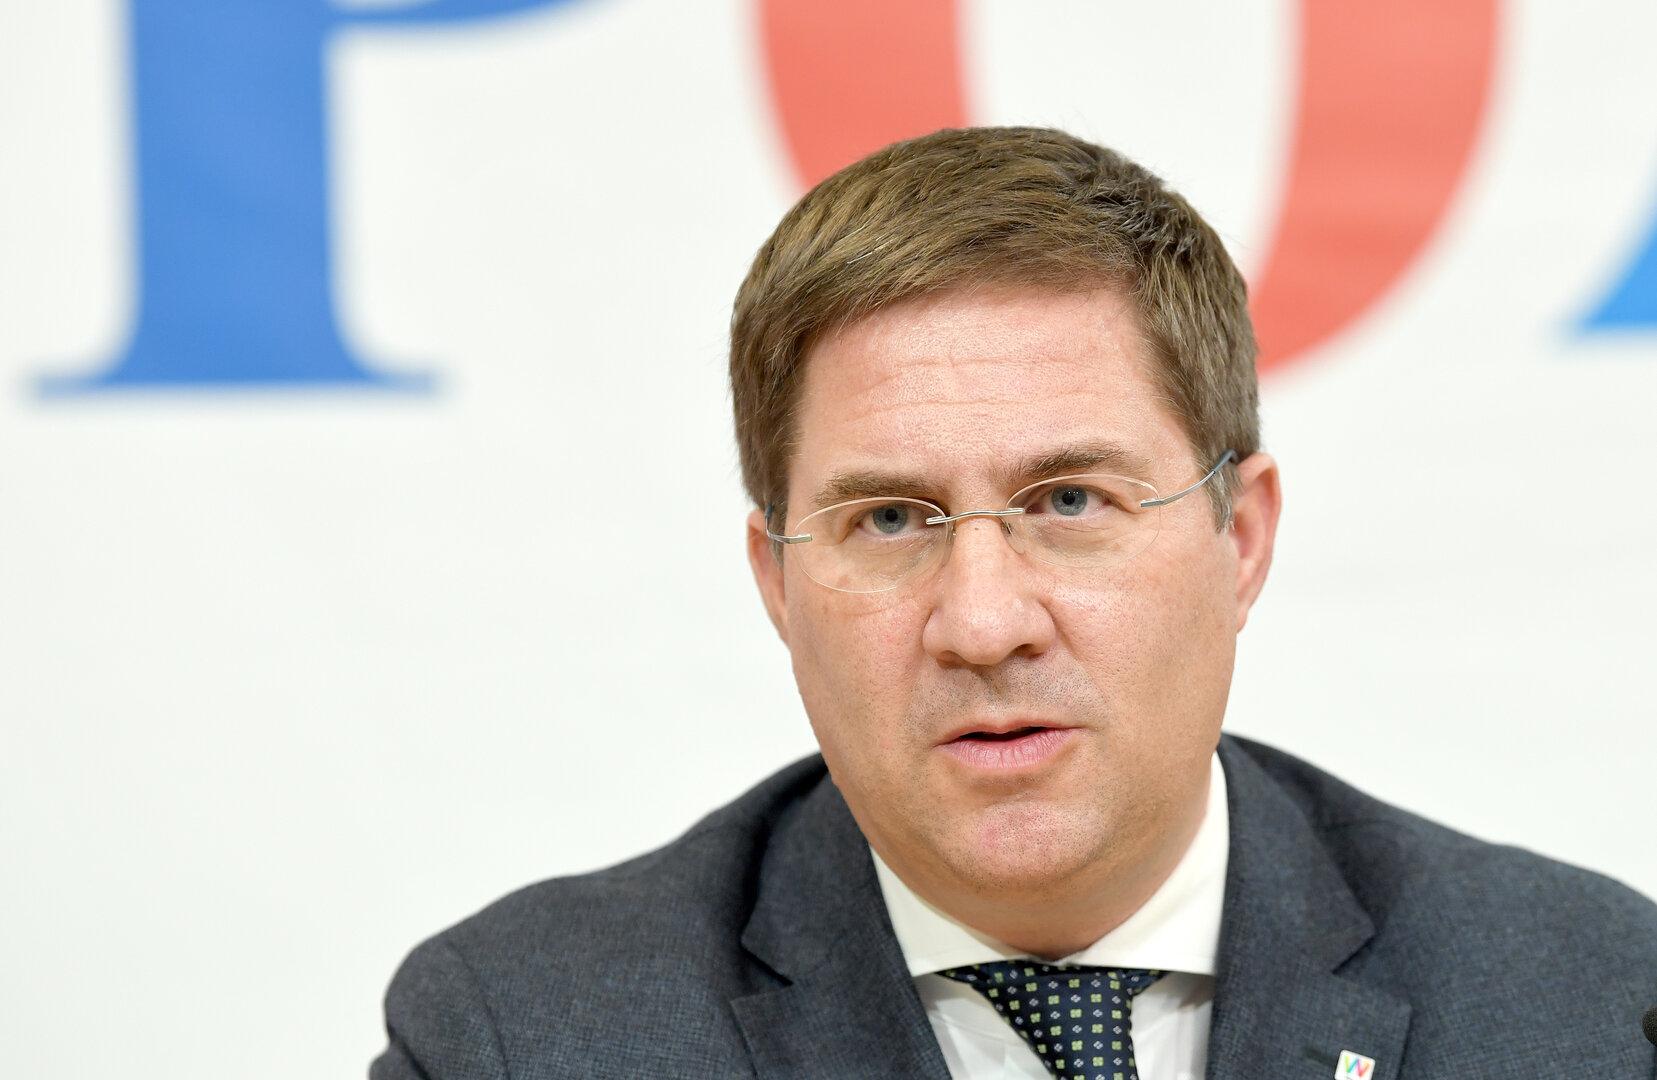 FPÖ-Kandidatur für Shoah-Gedenkverein: SPÖ-Stadtchef zieht Liste zurück